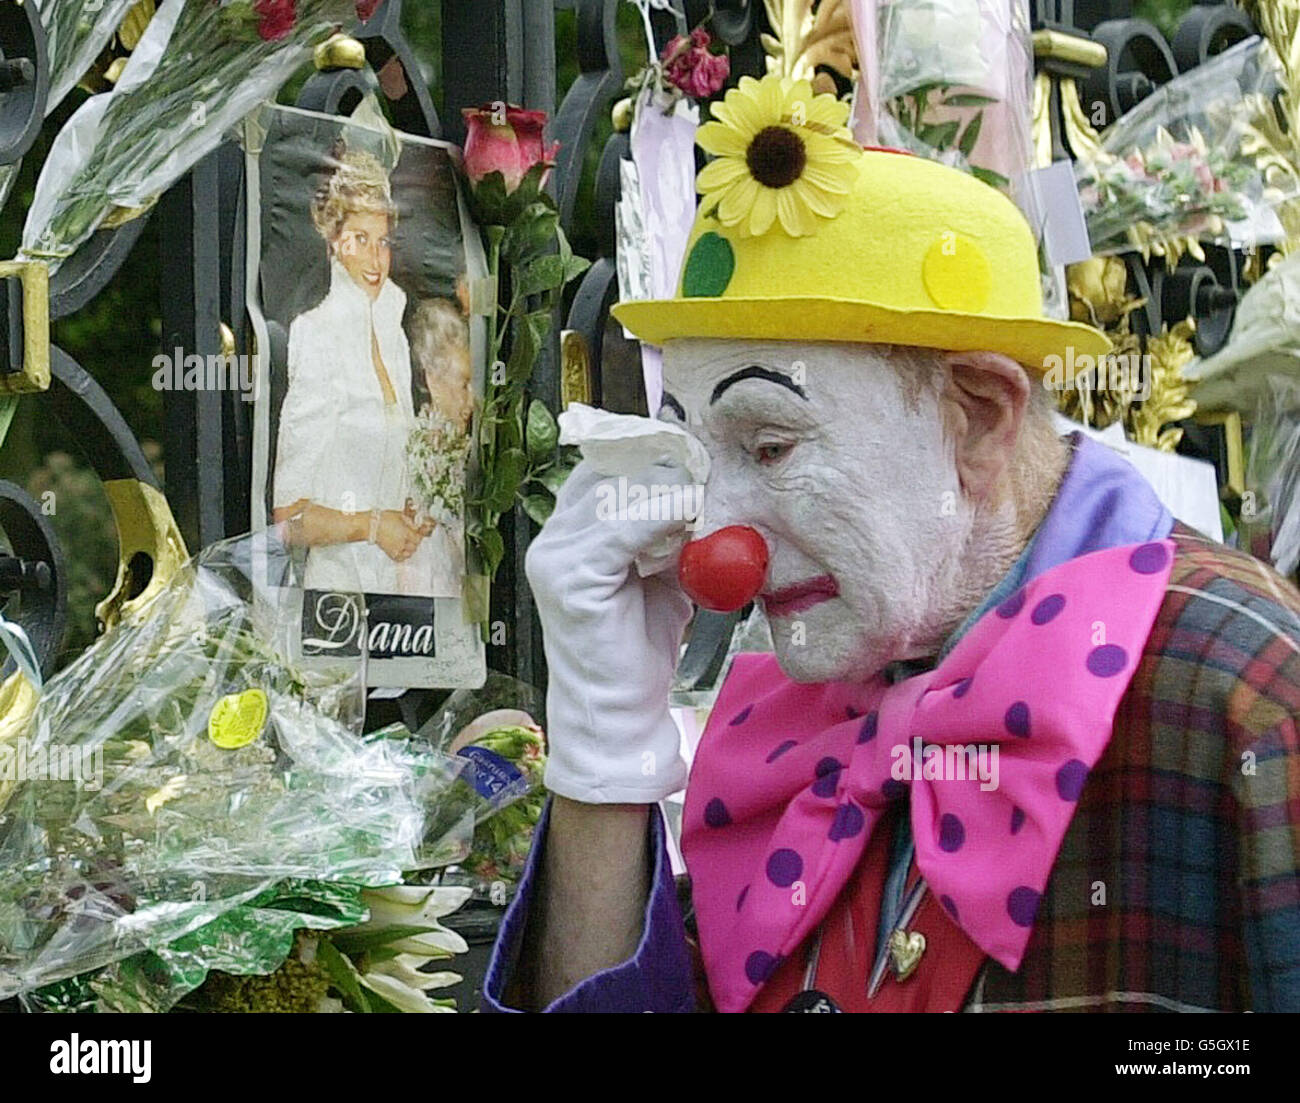 Ein Clown schreit vor den Toren des Kensington Palace, der ehemaligen Londoner Residenz der vor vier Jahren verstorbenen Prinzessin von Wales. Die Tore sind mit Blumen und Karten geschmückt, um an die Prinzessin zu erinnern, die 1997 bei einem Autounfall in Paris starb. Stockfoto